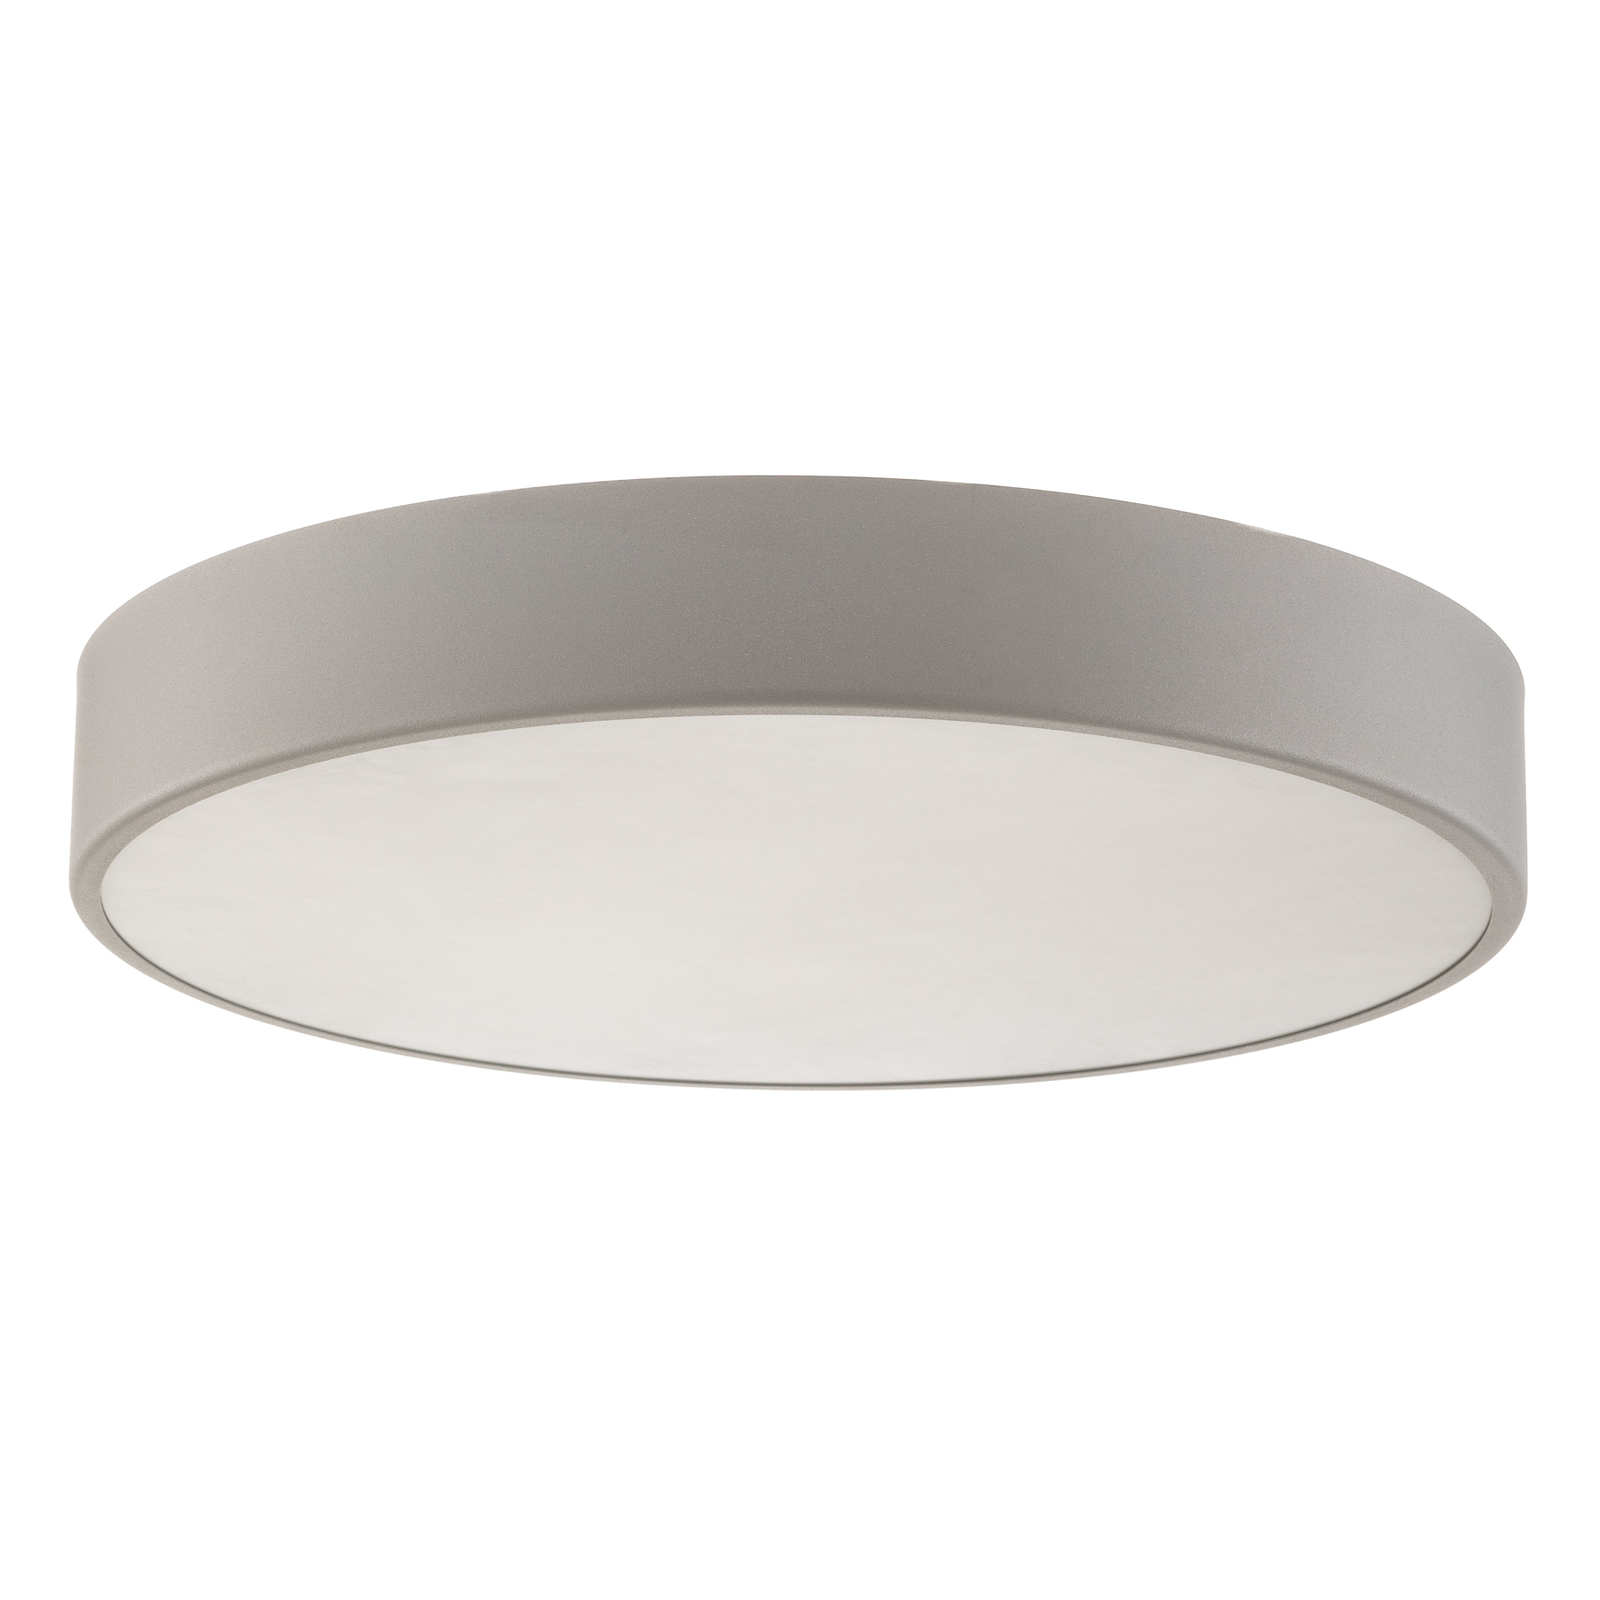 Cleo 500 ceiling light, sensor, Ø 50 cm grey